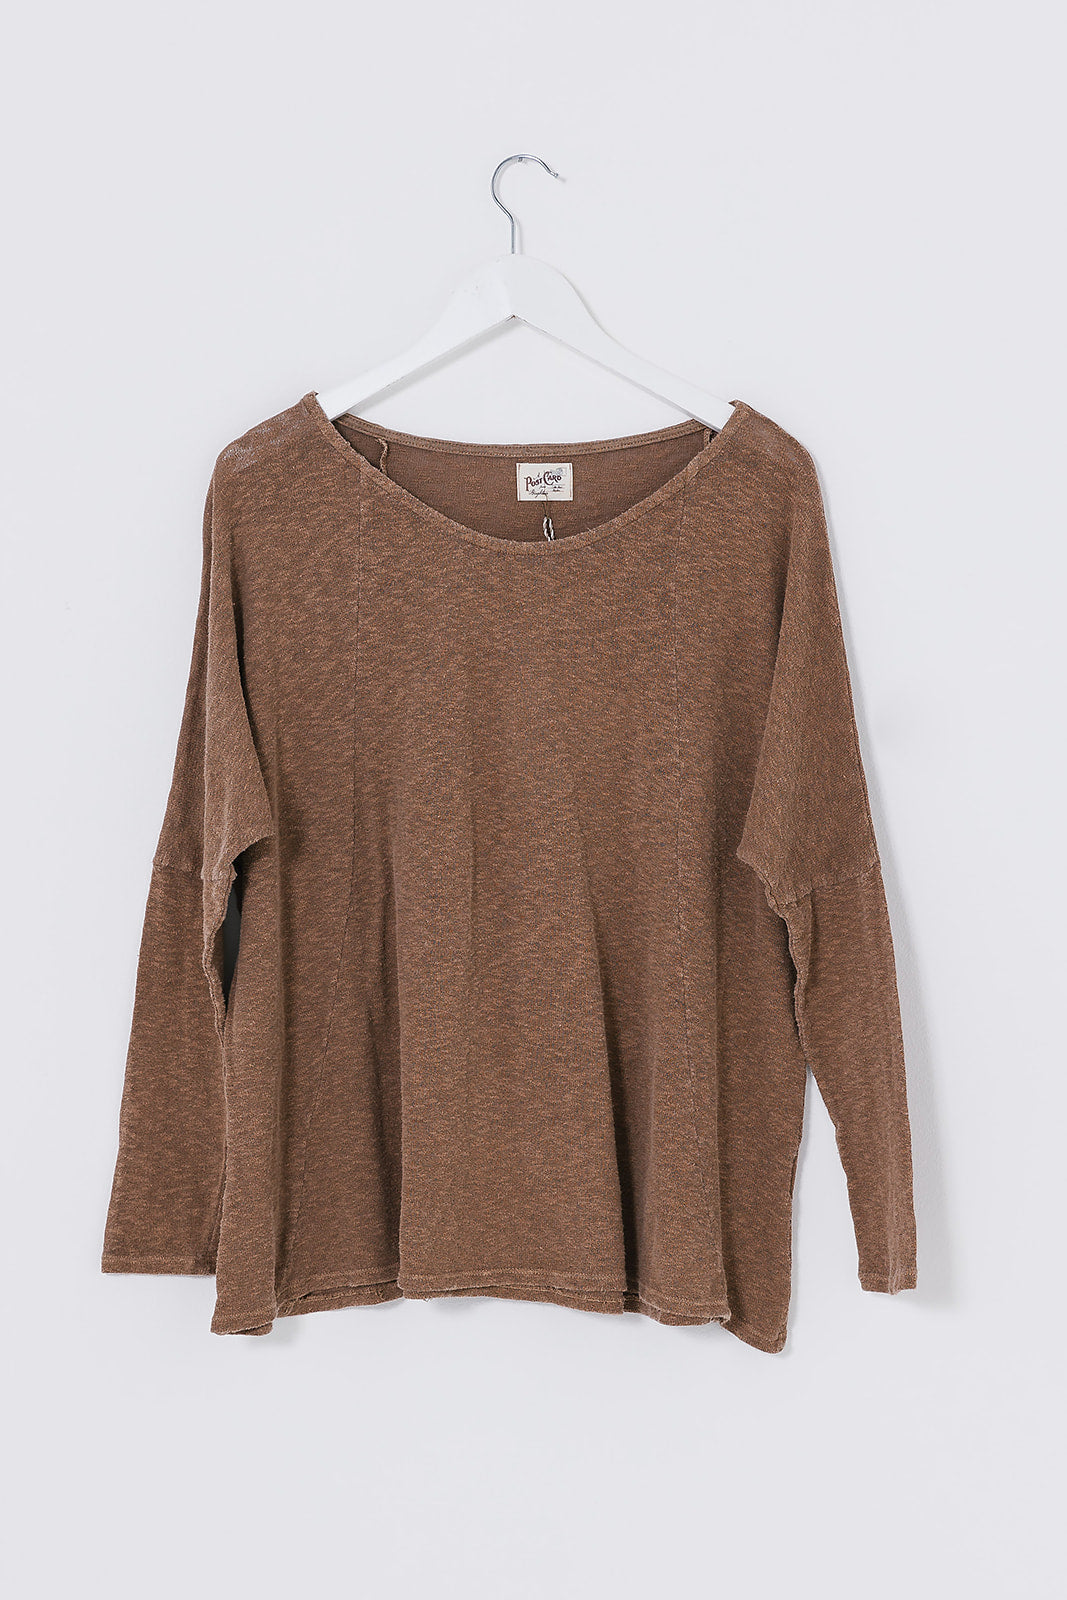 A/W Rachel Slub knit plain